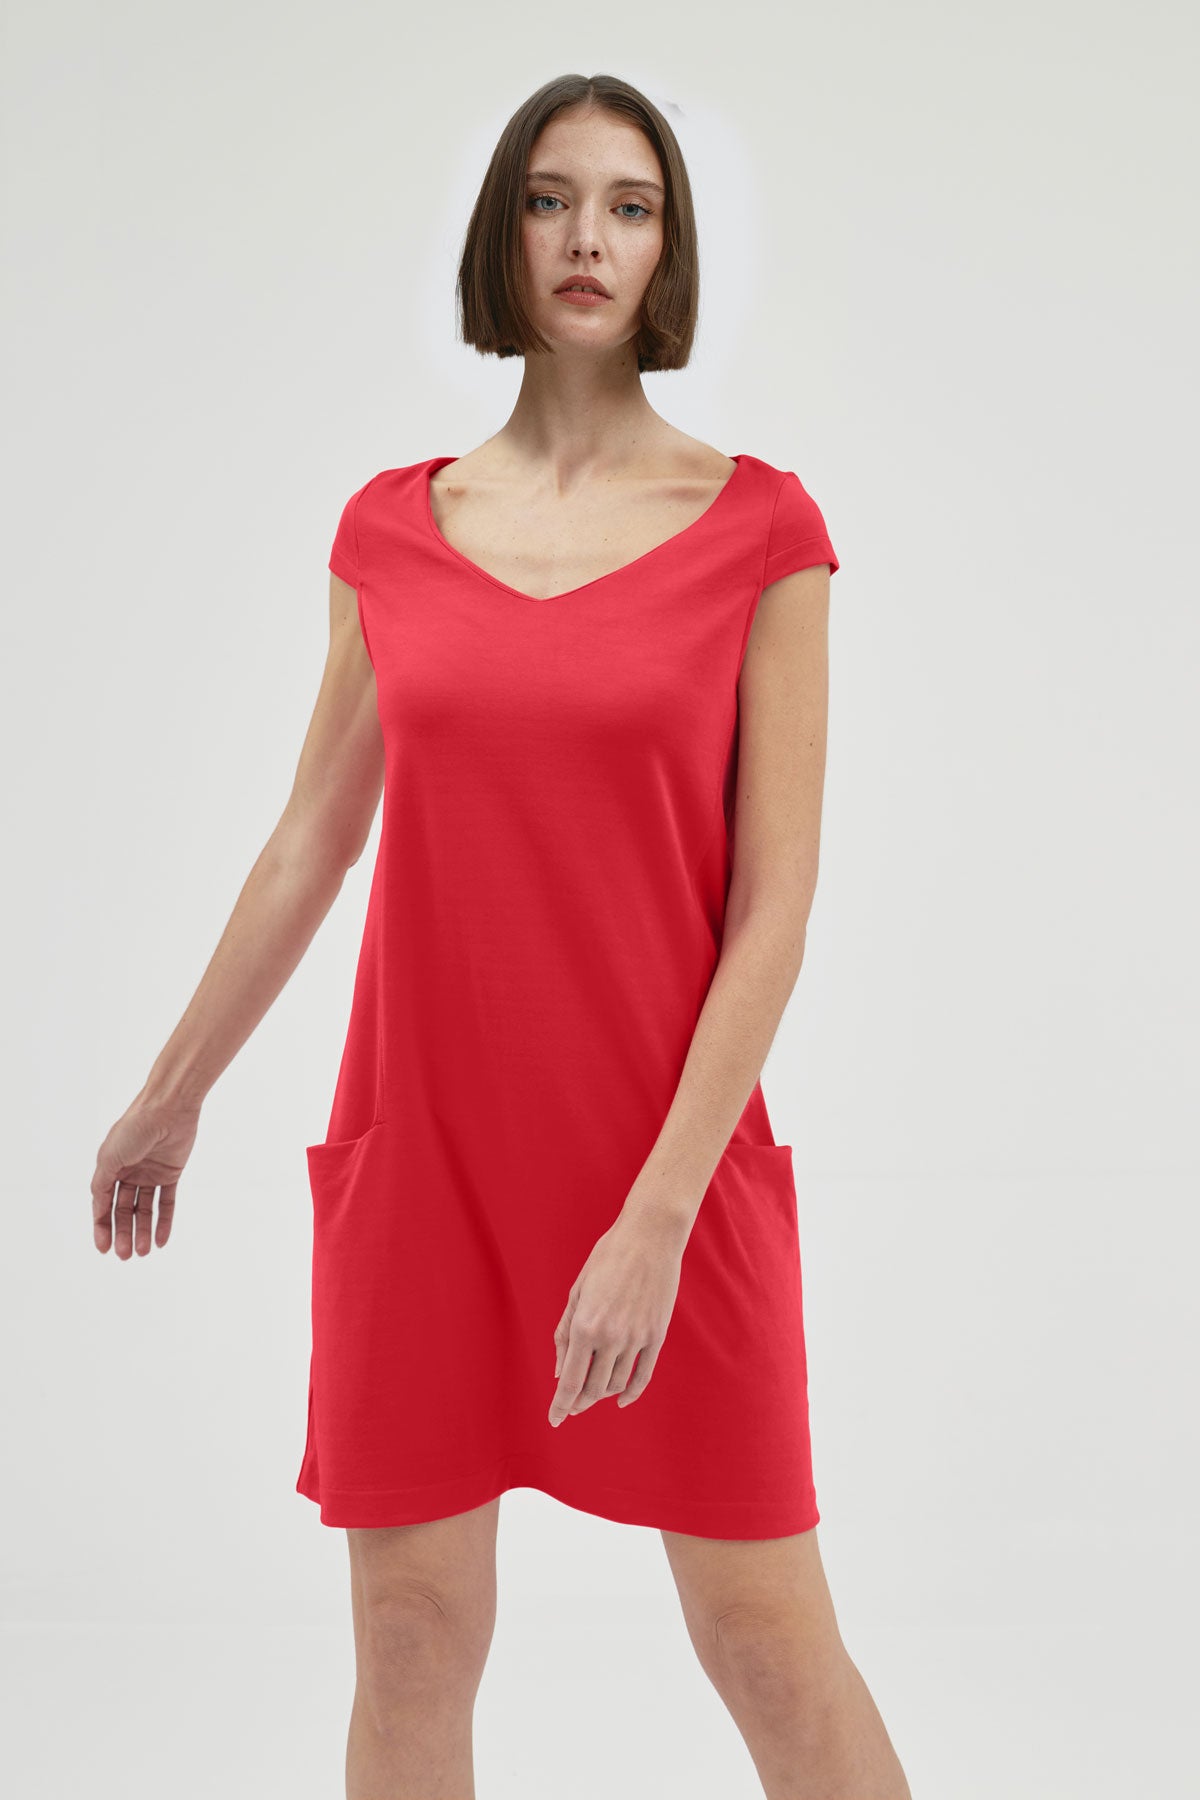 Vestido holgado de mujer con cuello redondo y bolsillos. Un vestido perfecto para mujer en verano, un básico de fondo de armario en color rojo